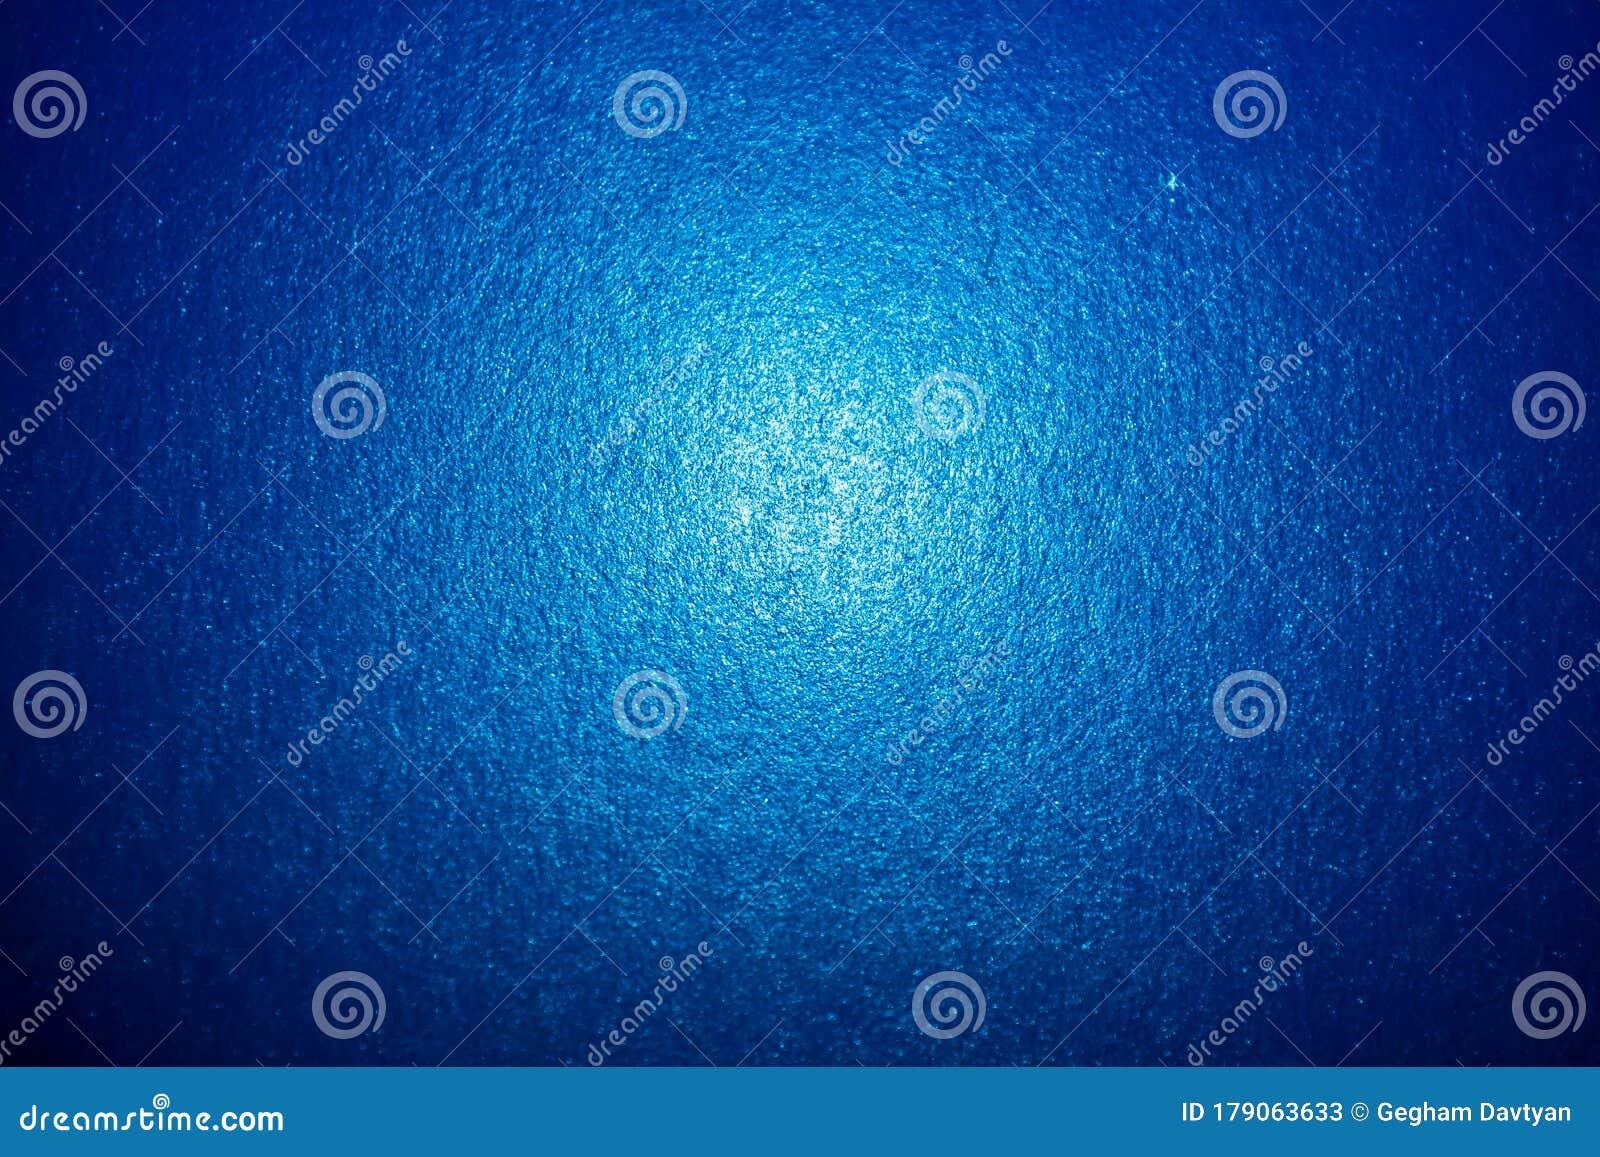 深蓝色背景 蓝色抽象背景 蓝色壁纸 高清抽象蓝色壁纸库存例证 插画包括有梯度 不列塔尼的 硬木